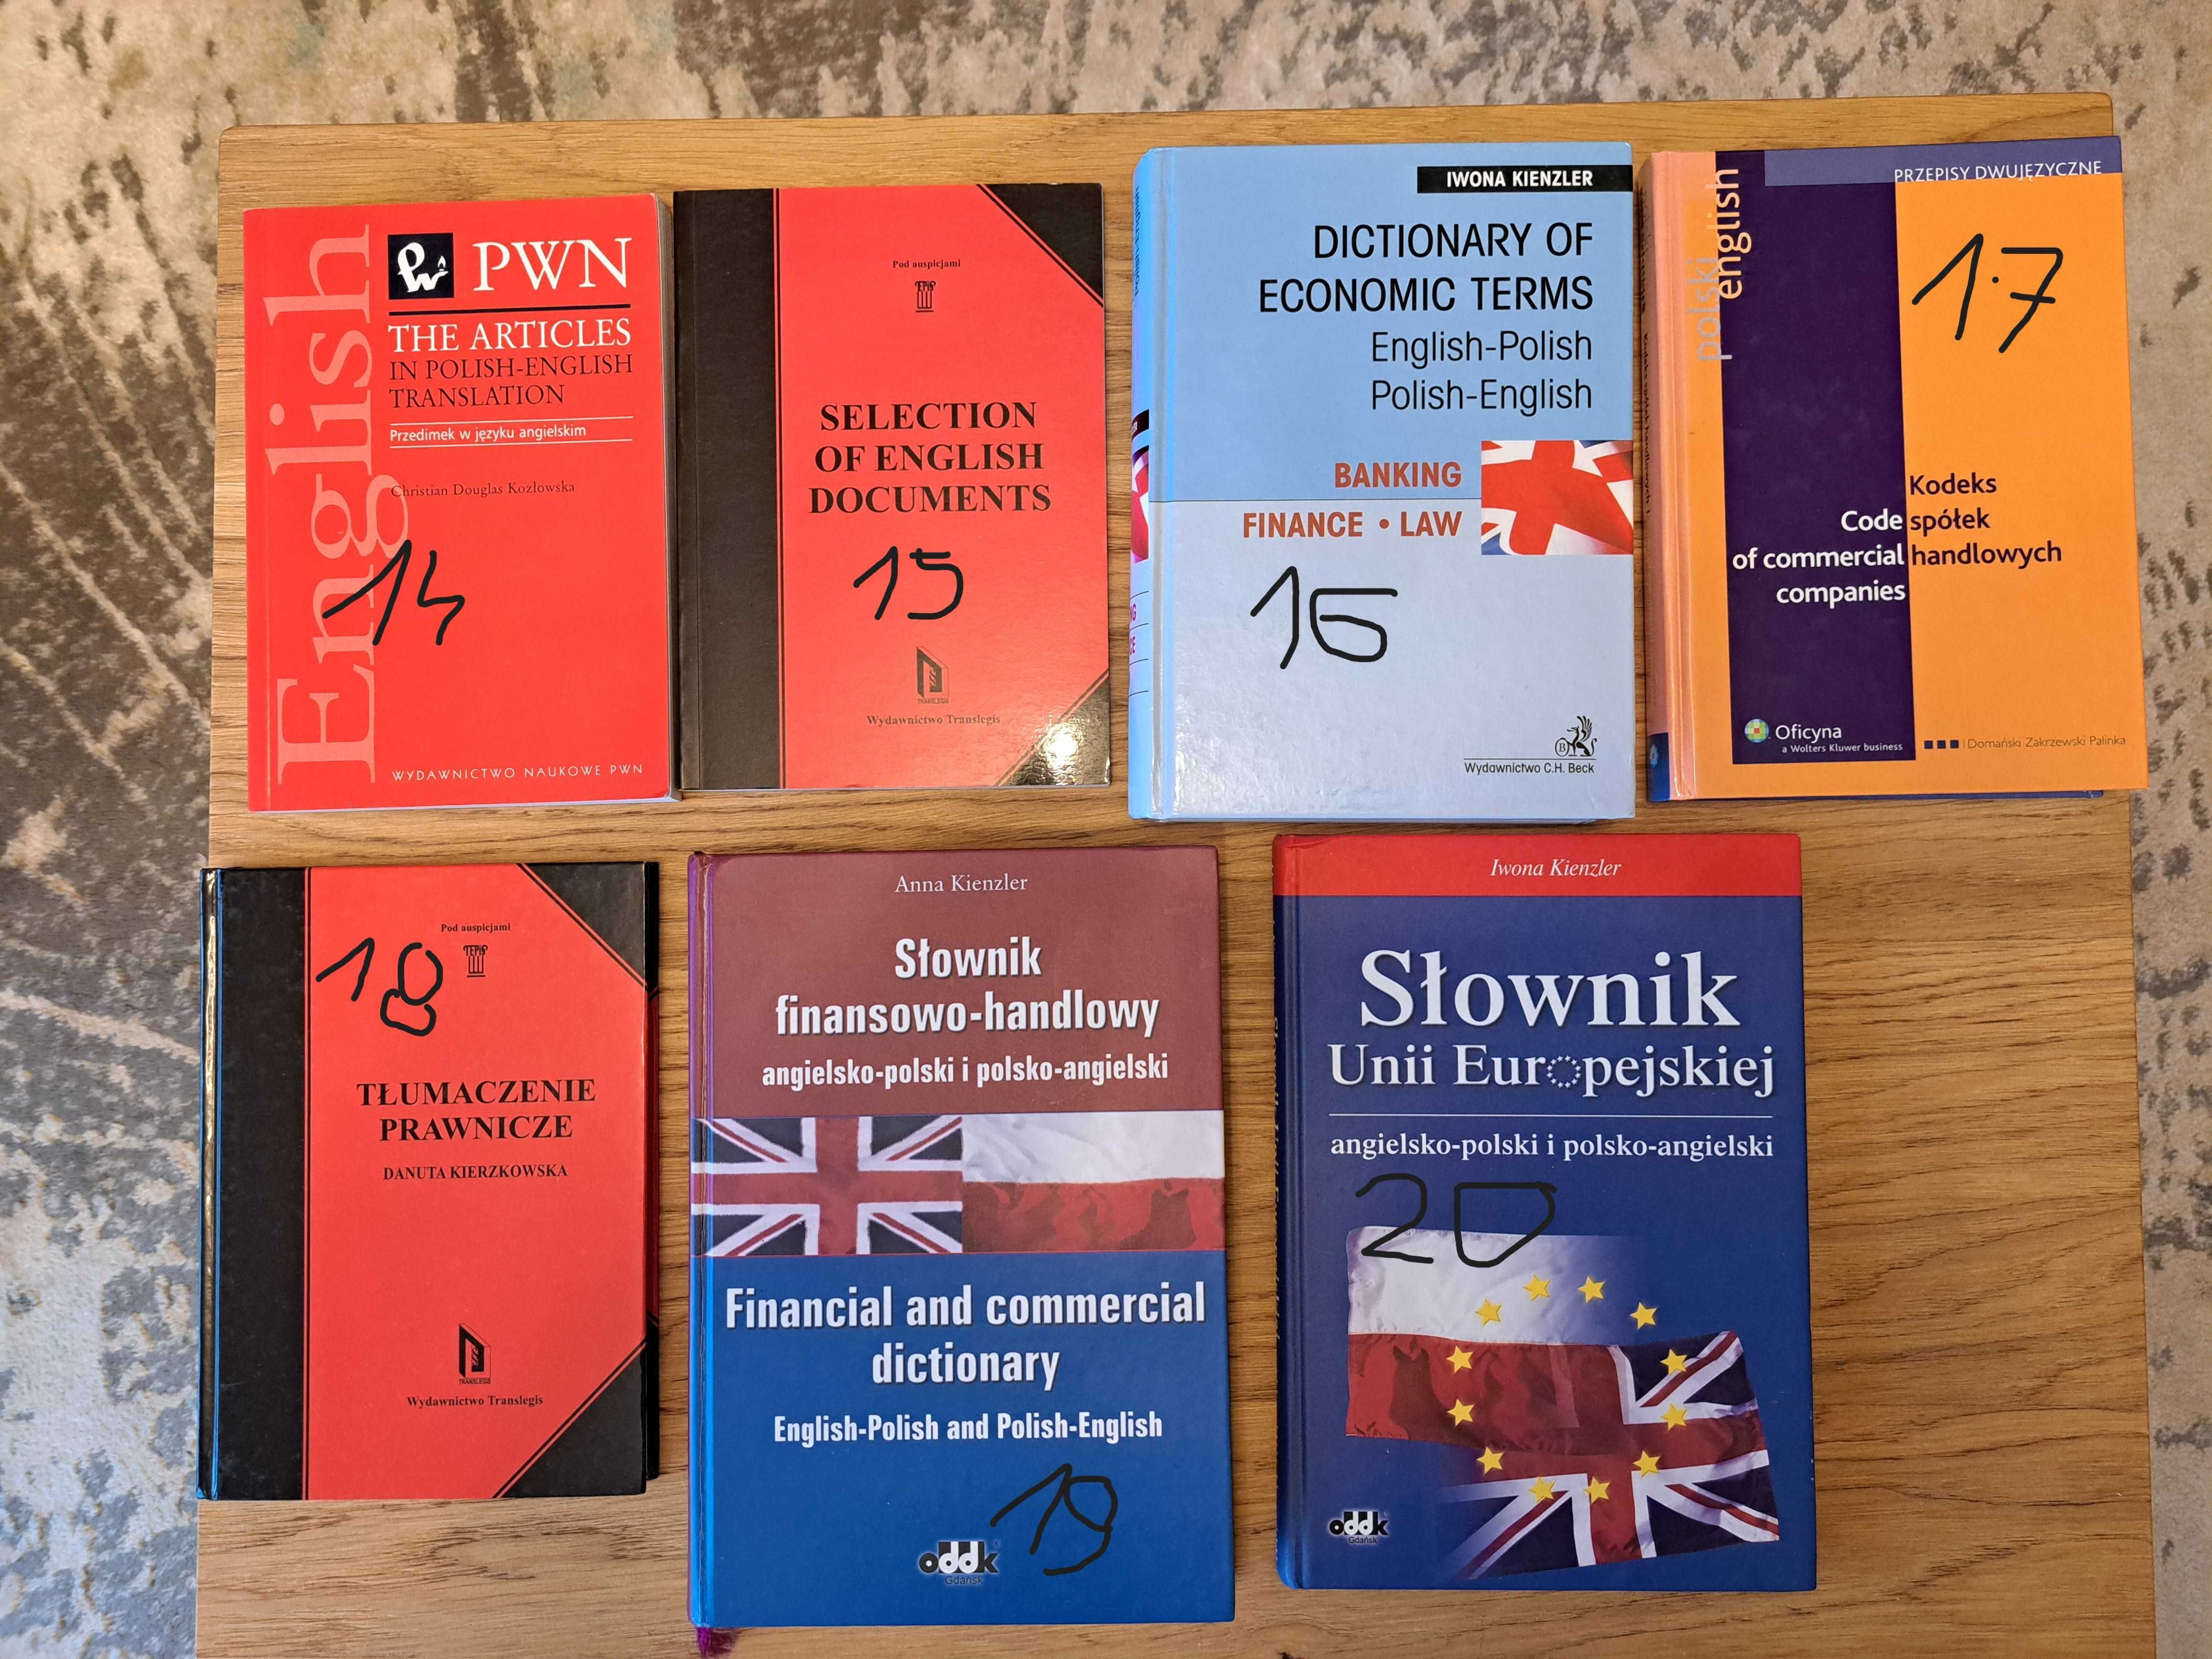 Słownik finansowo-handlowy, angielsko-polski i polsko-angielski